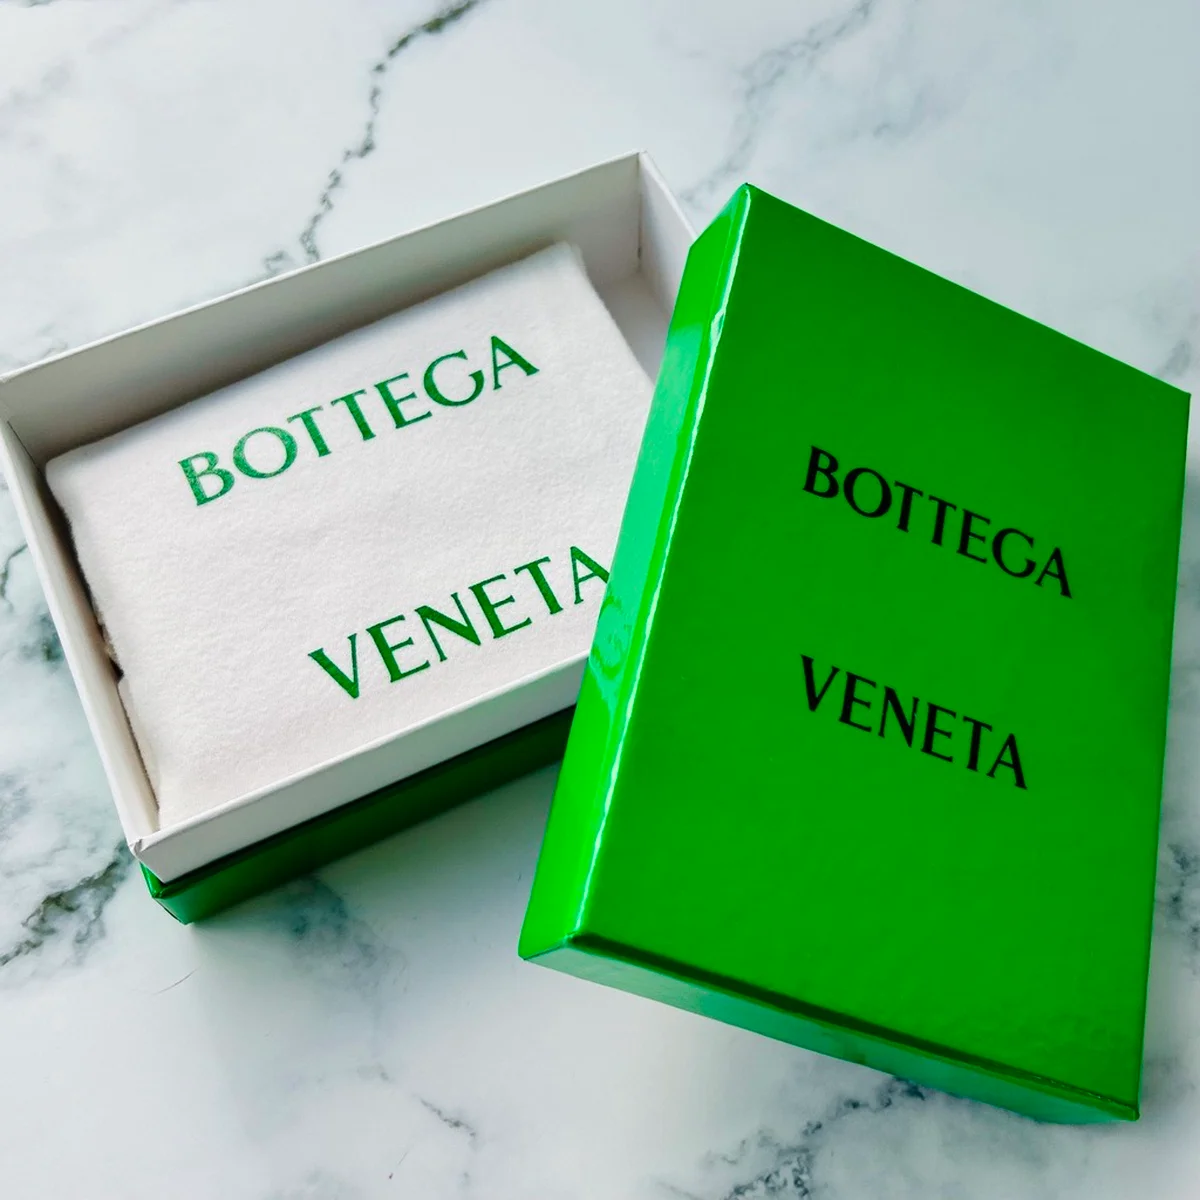 ボッテガ・ヴェネタのグリーンボックスの写真